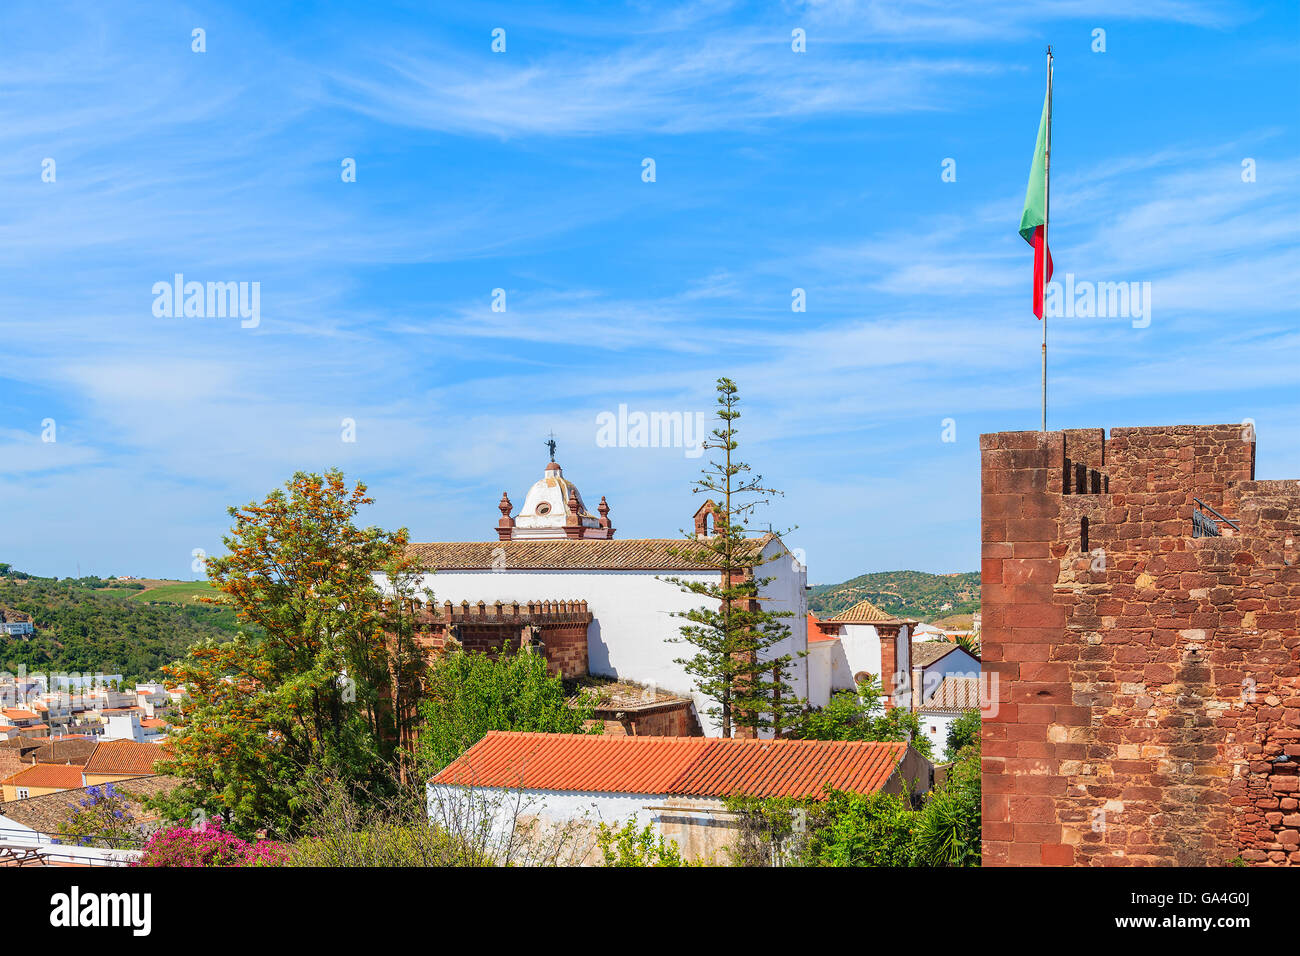 Vista de la torre de castillo con bandera portuguesa y el edificio de la catedral de Silves, ciudad de la región de Algarve, Portugal Foto de stock